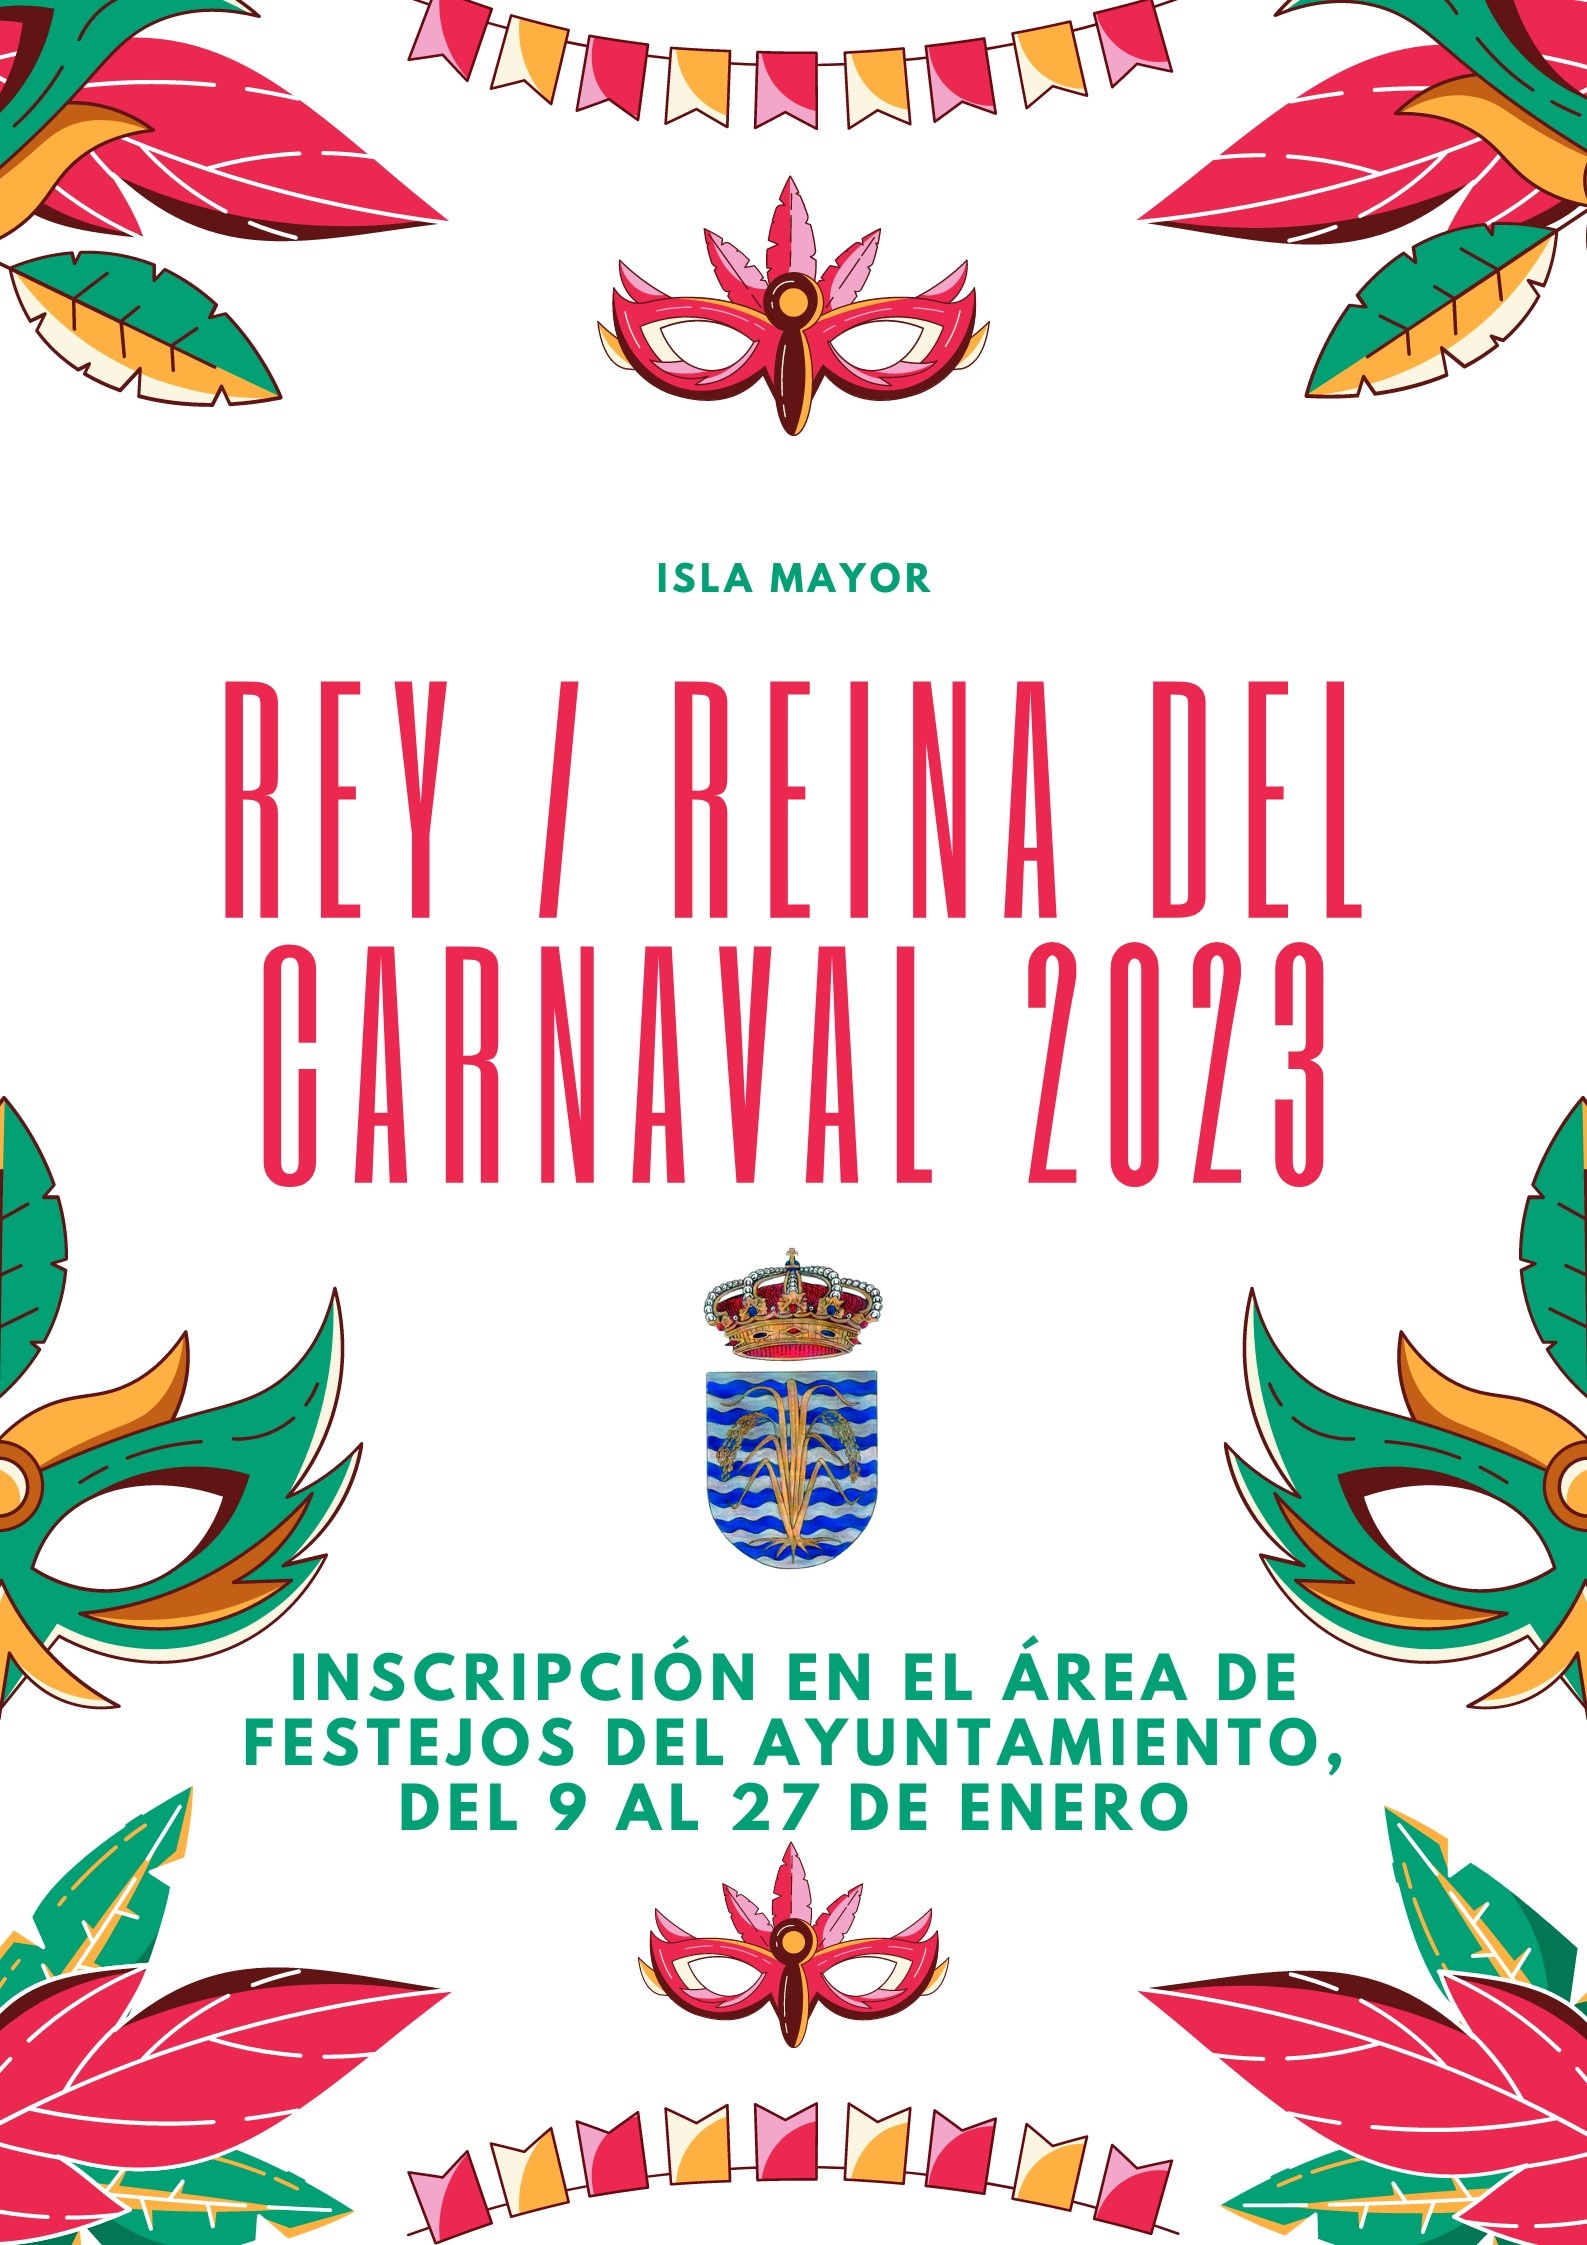 Póster Carnaval 2022 Fondo Blanco, Rojo, Verde y Amarillo